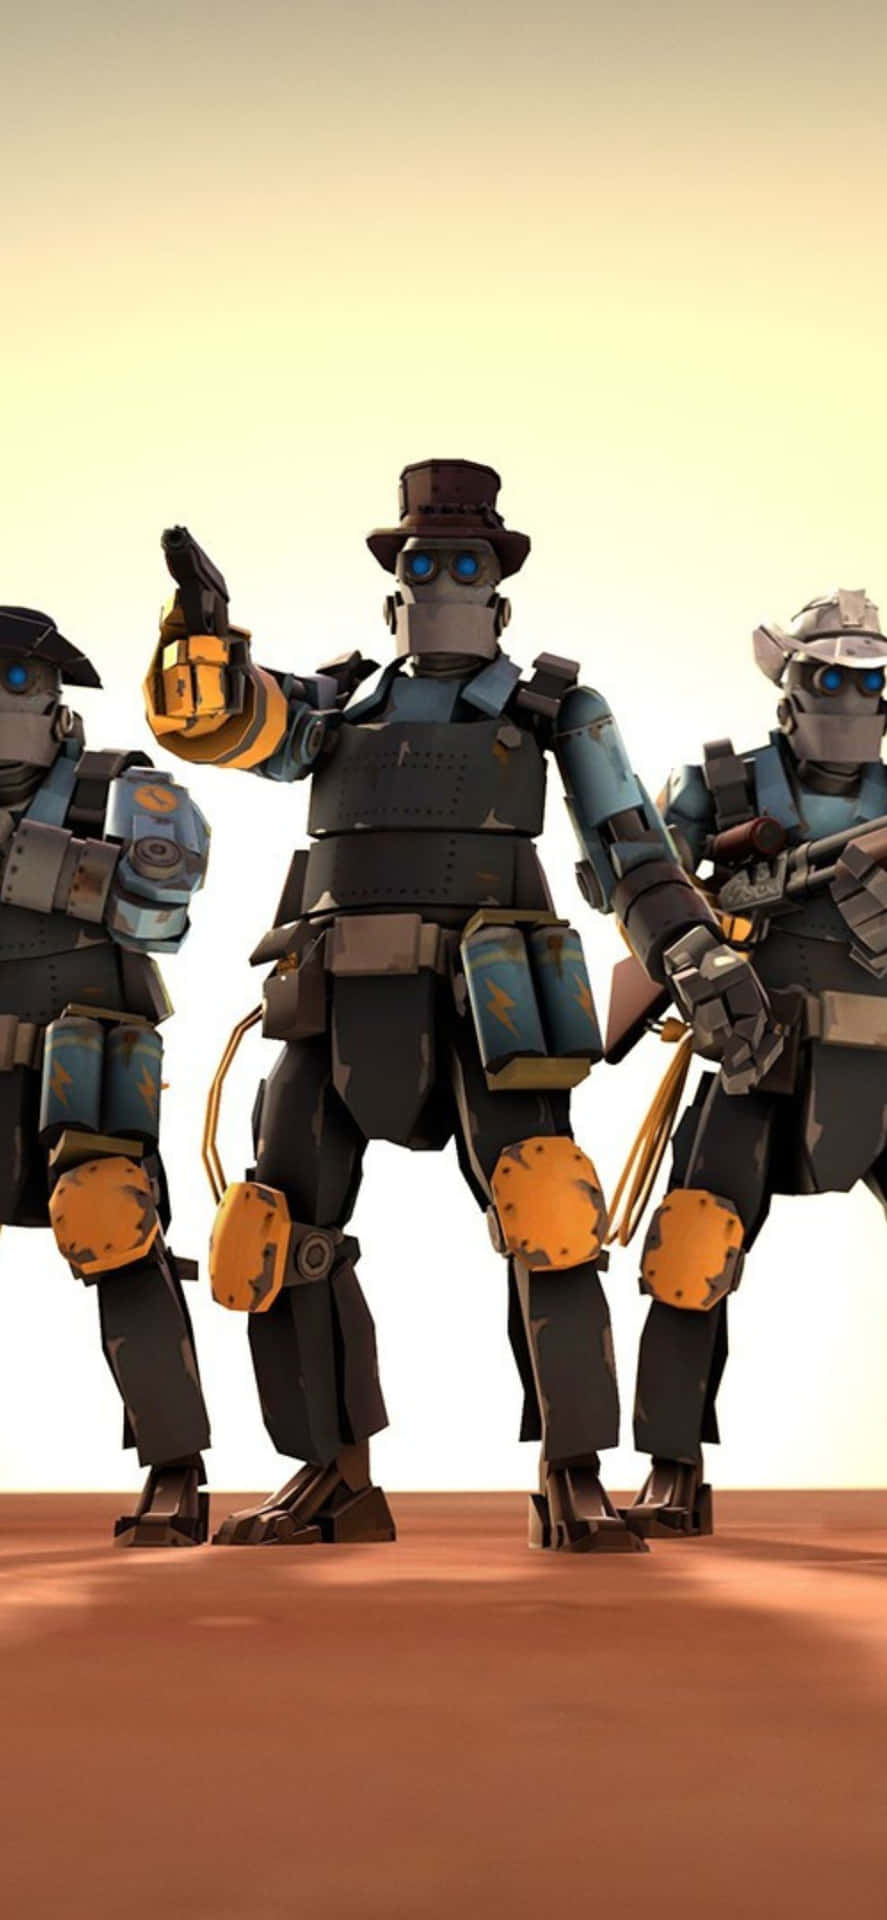 Iphonexs-bakgrund Med Team Fortress 2 Cowboyrobotar.